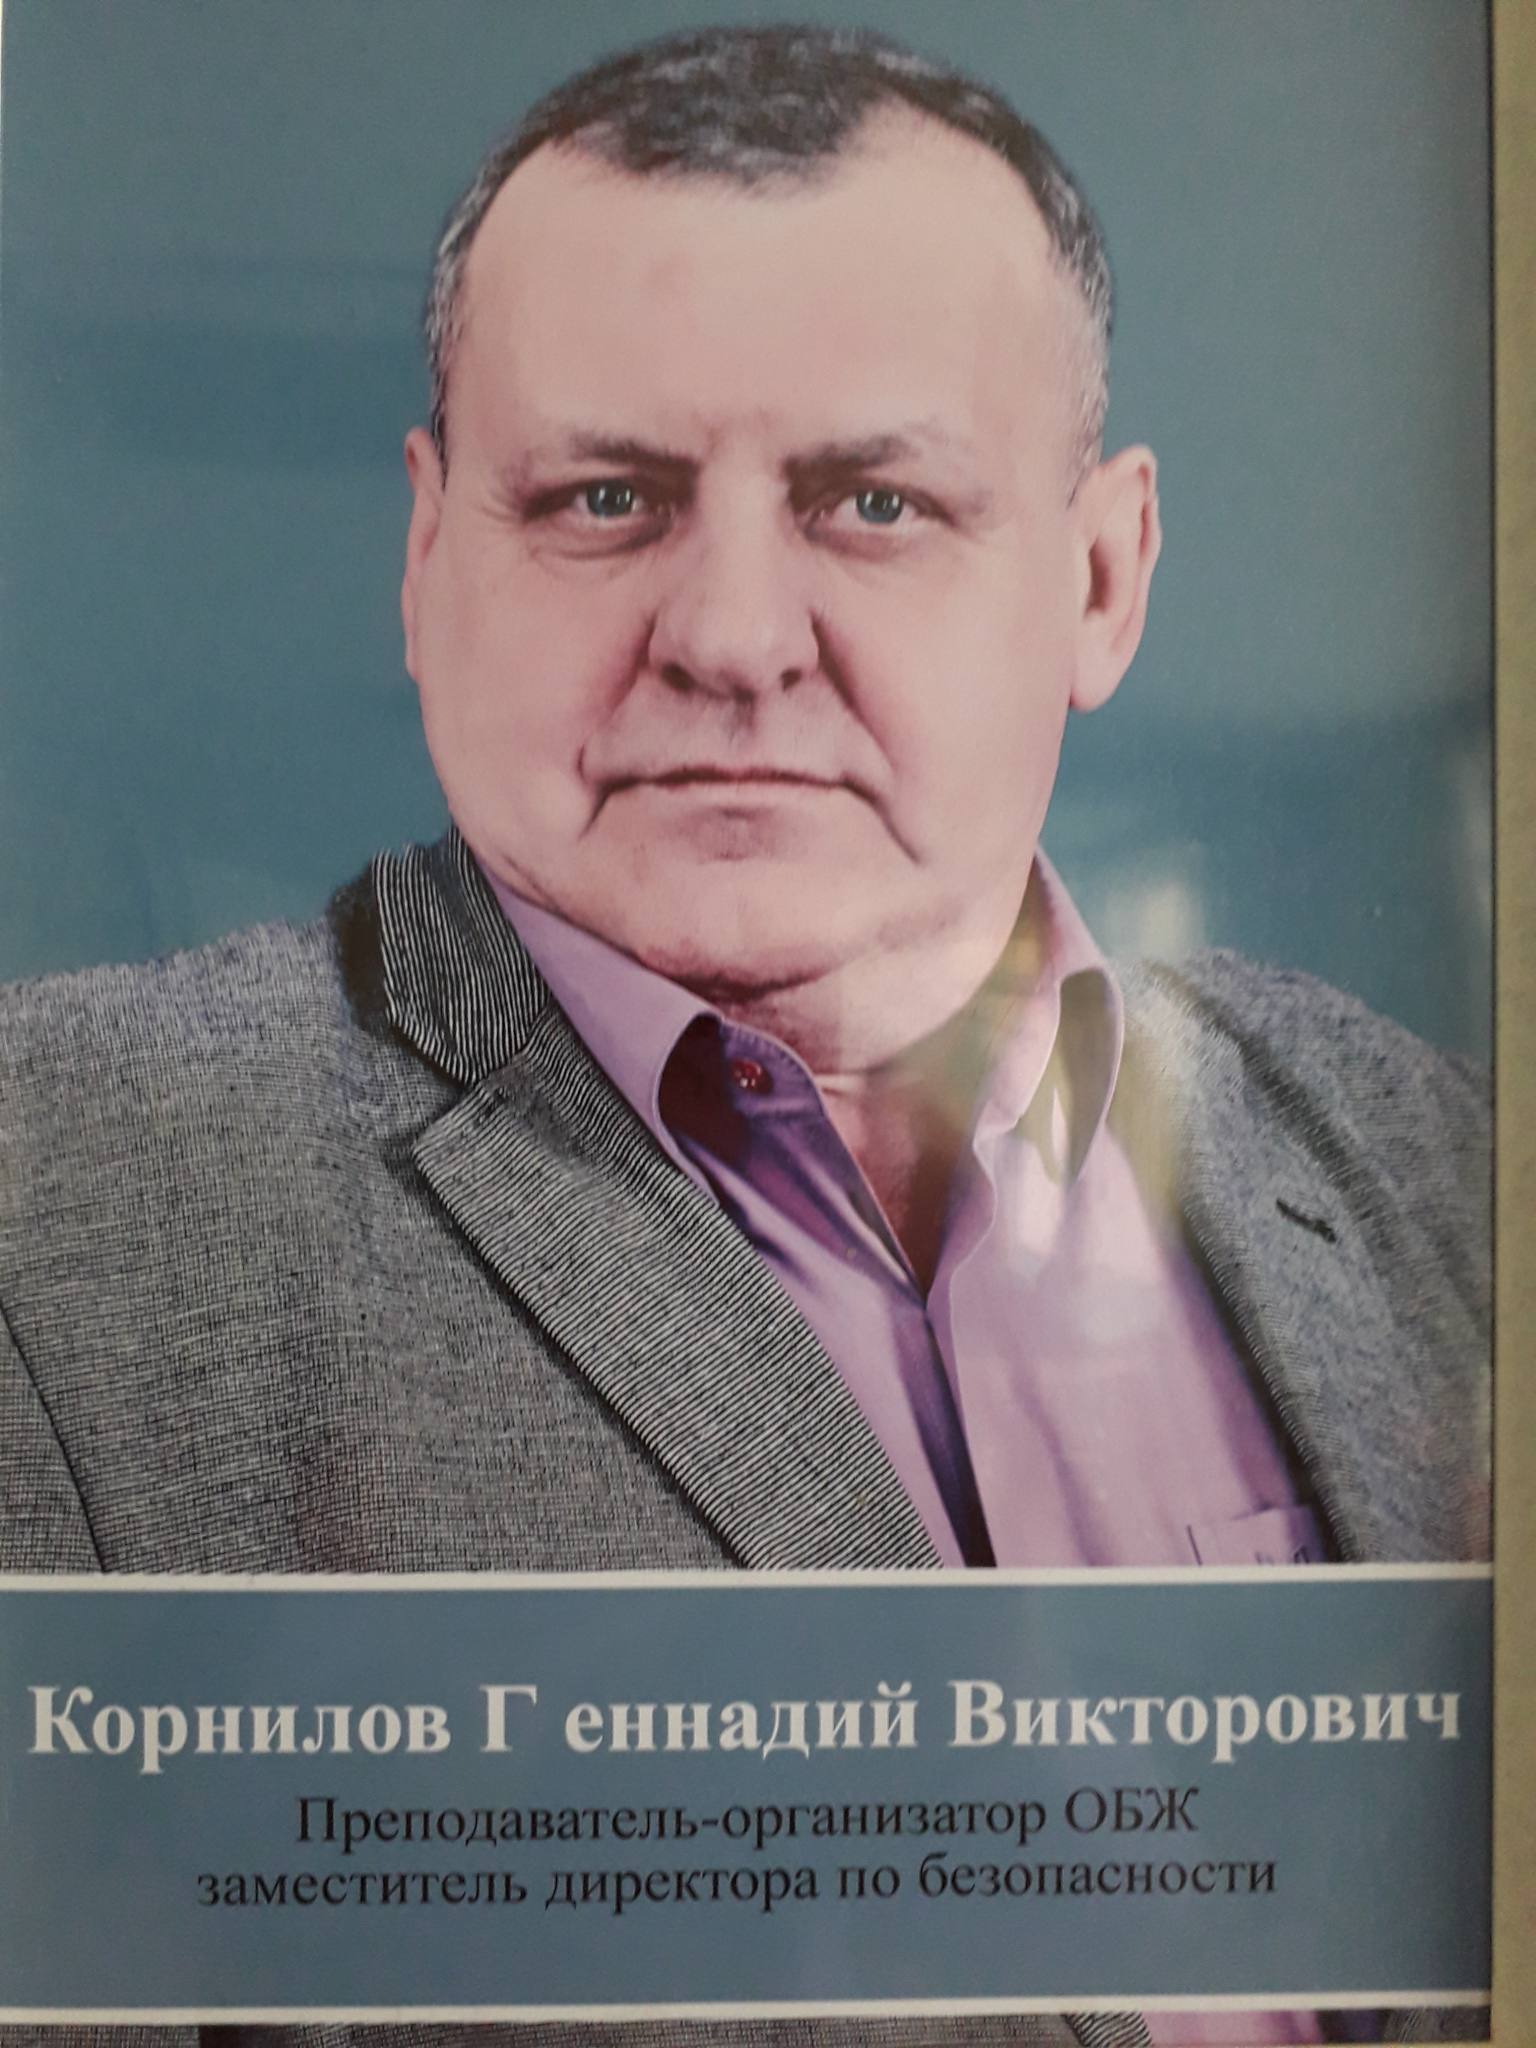 Корнилов Геннадий Викторович.